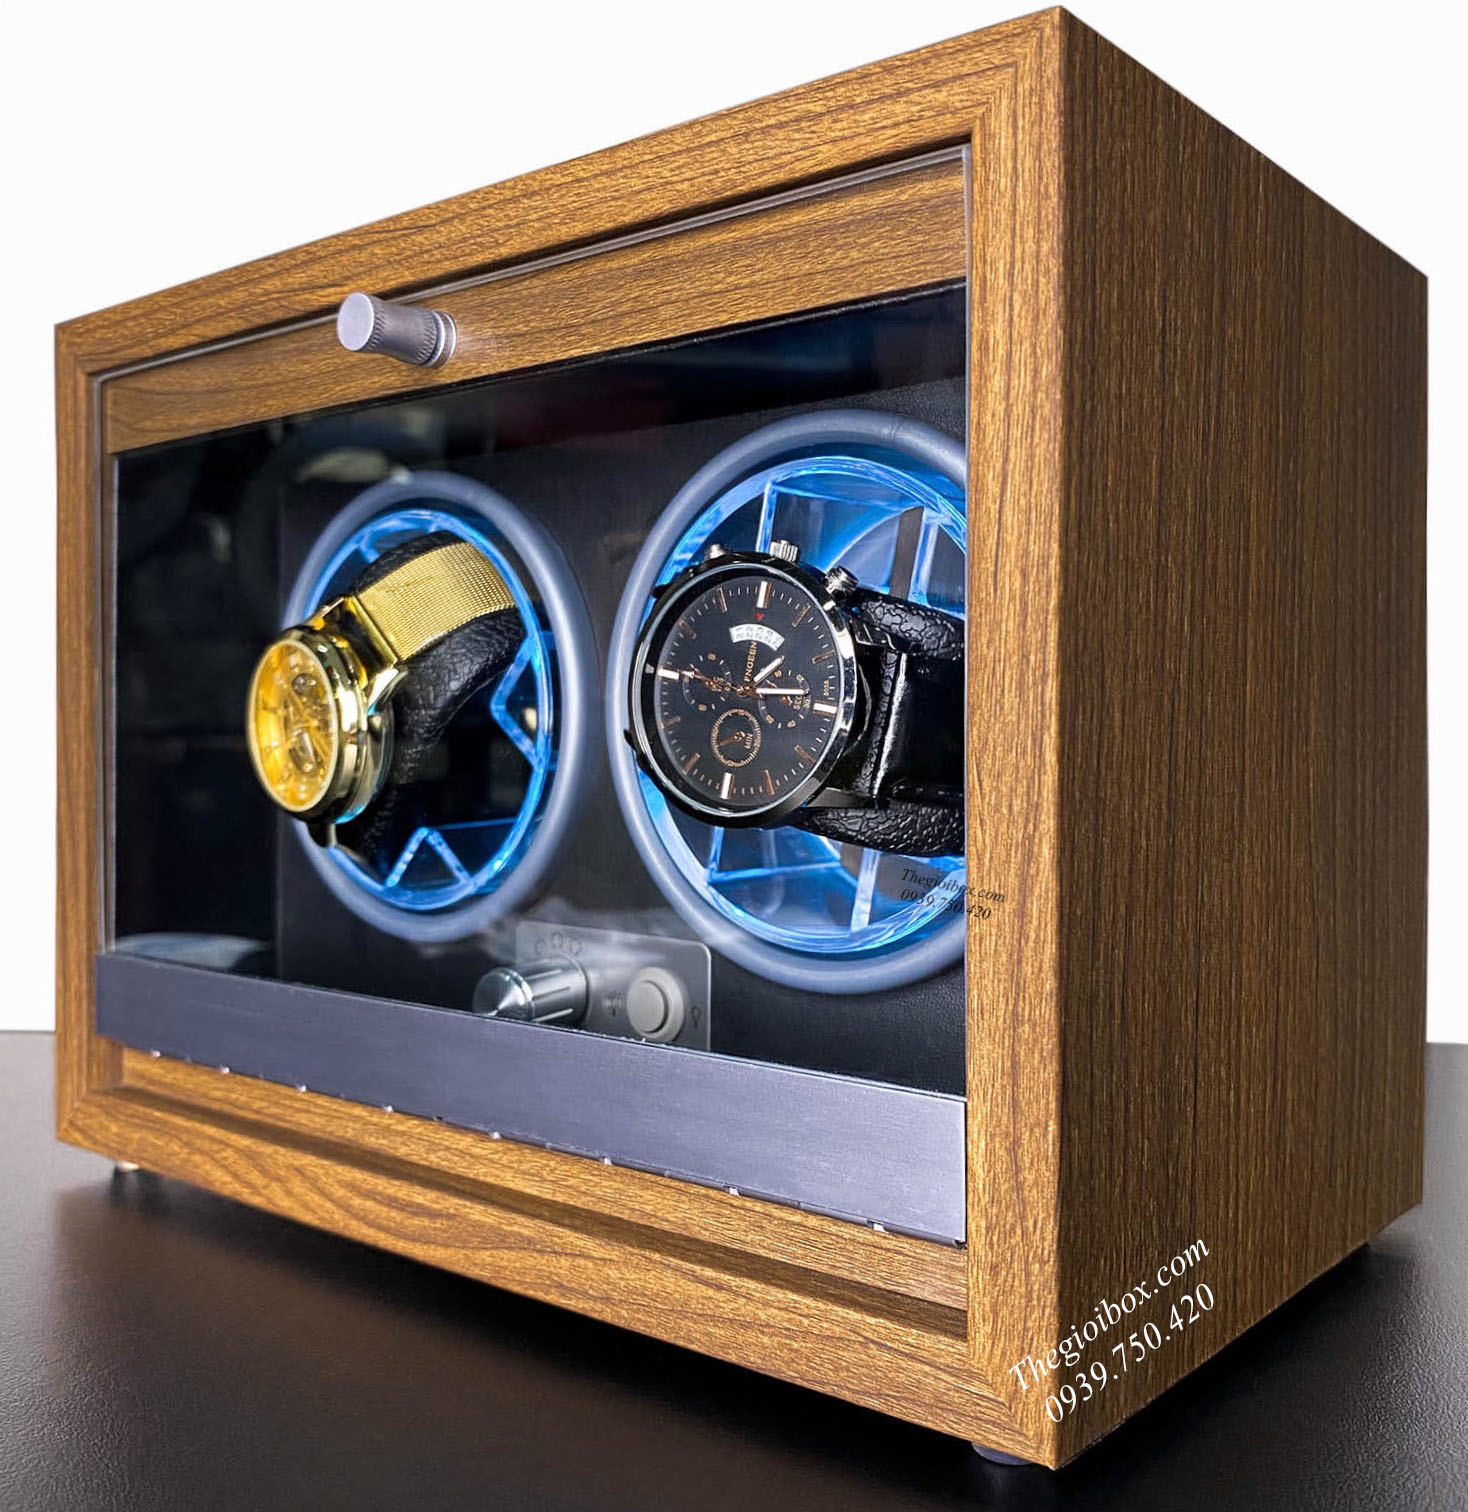 Tủ xoay đồng hồ cơ 2 ngăn cửa kính + vỏ gỗ sần + đèn LED.